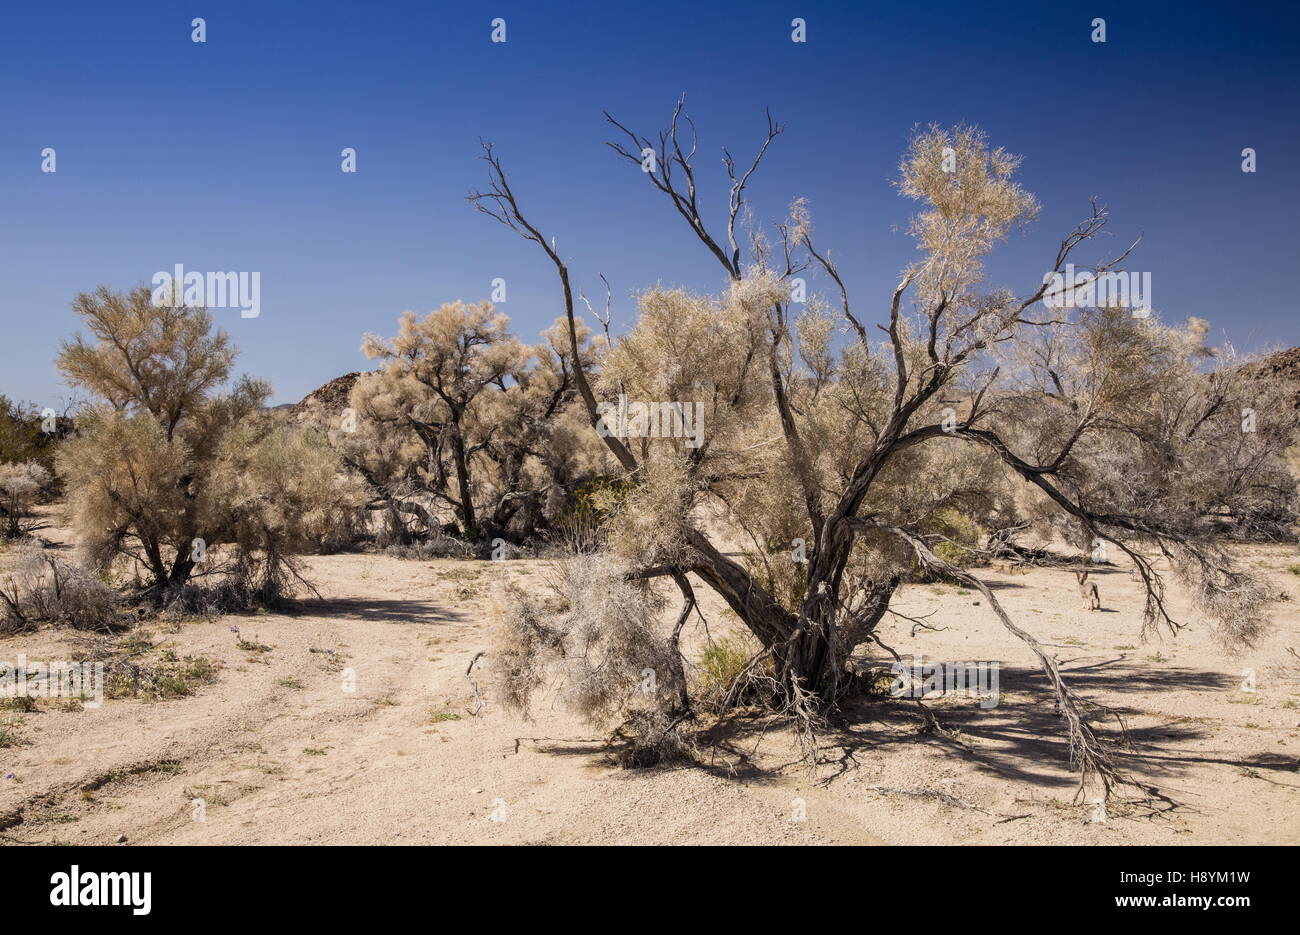 Arbre de fumée, Psorothamnus spinosus, dans le désert de gravier, de lavage (avec jack rabbit) le sud du désert californien. Banque D'Images